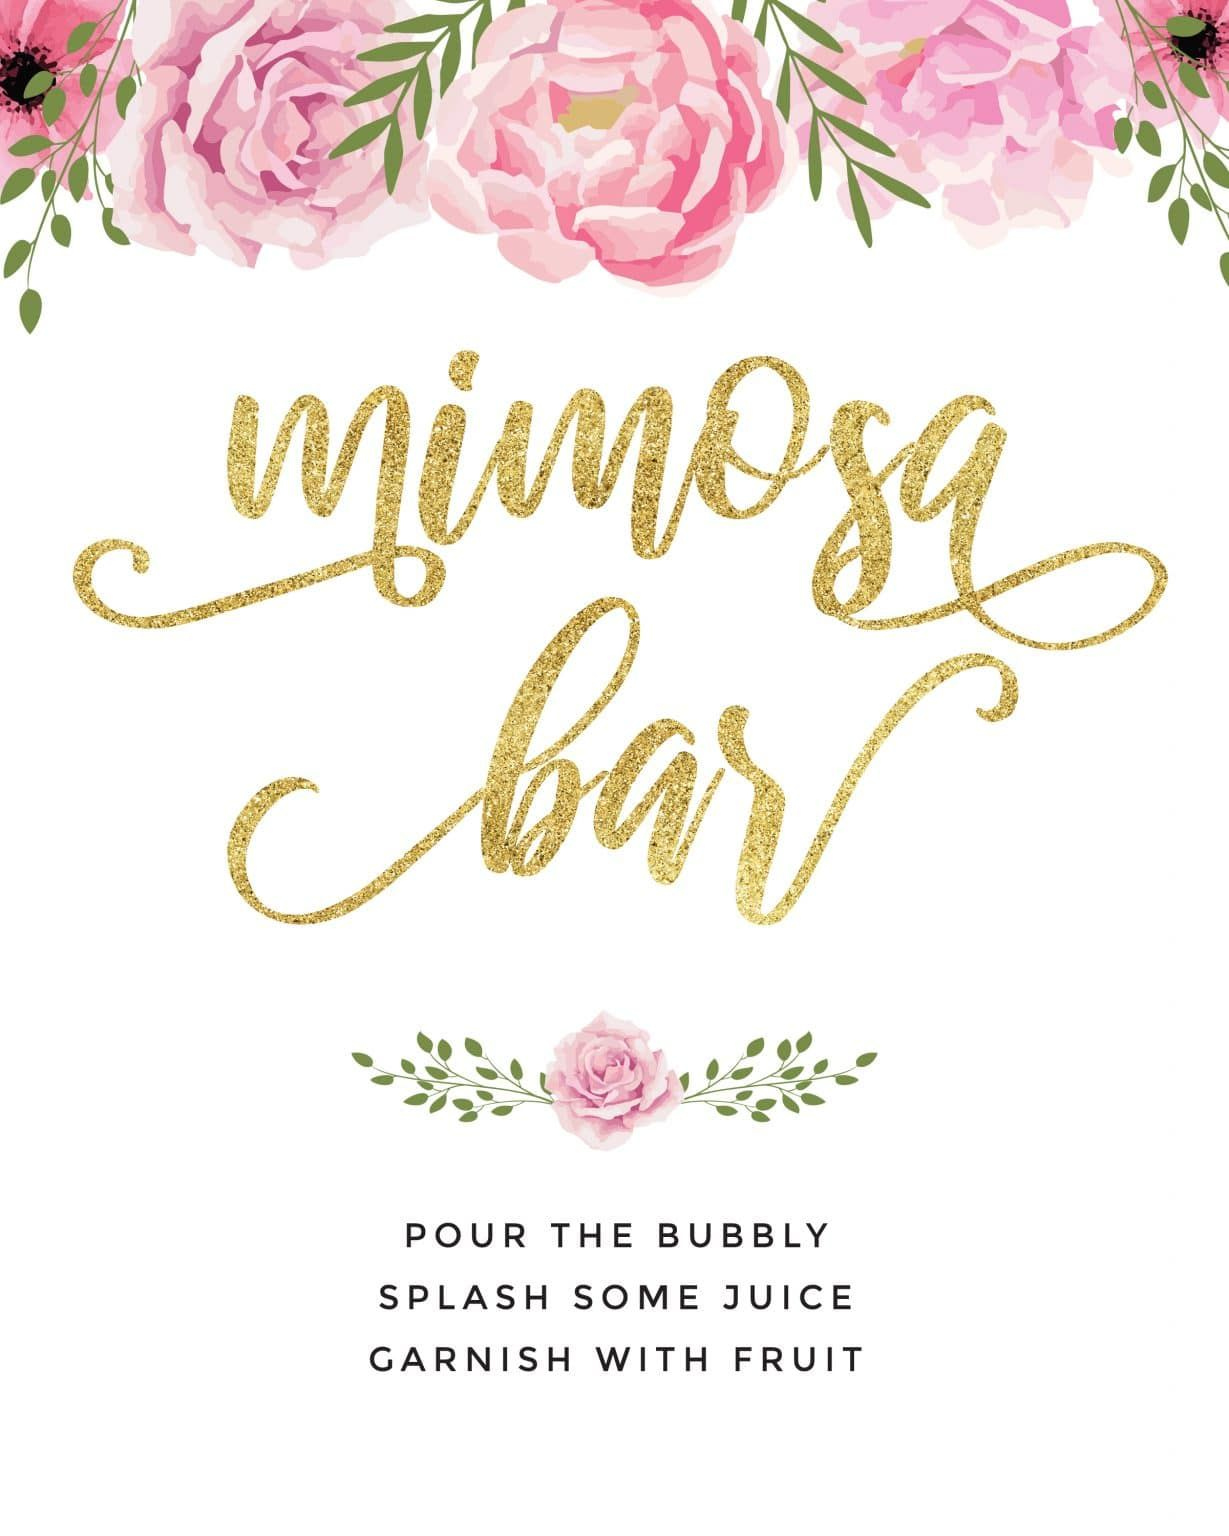 Beautiful Mimosa Bar Sign And Free Printables | Mimosa Bar Sign pertaining to Free Printable Mimosa Bar Sign